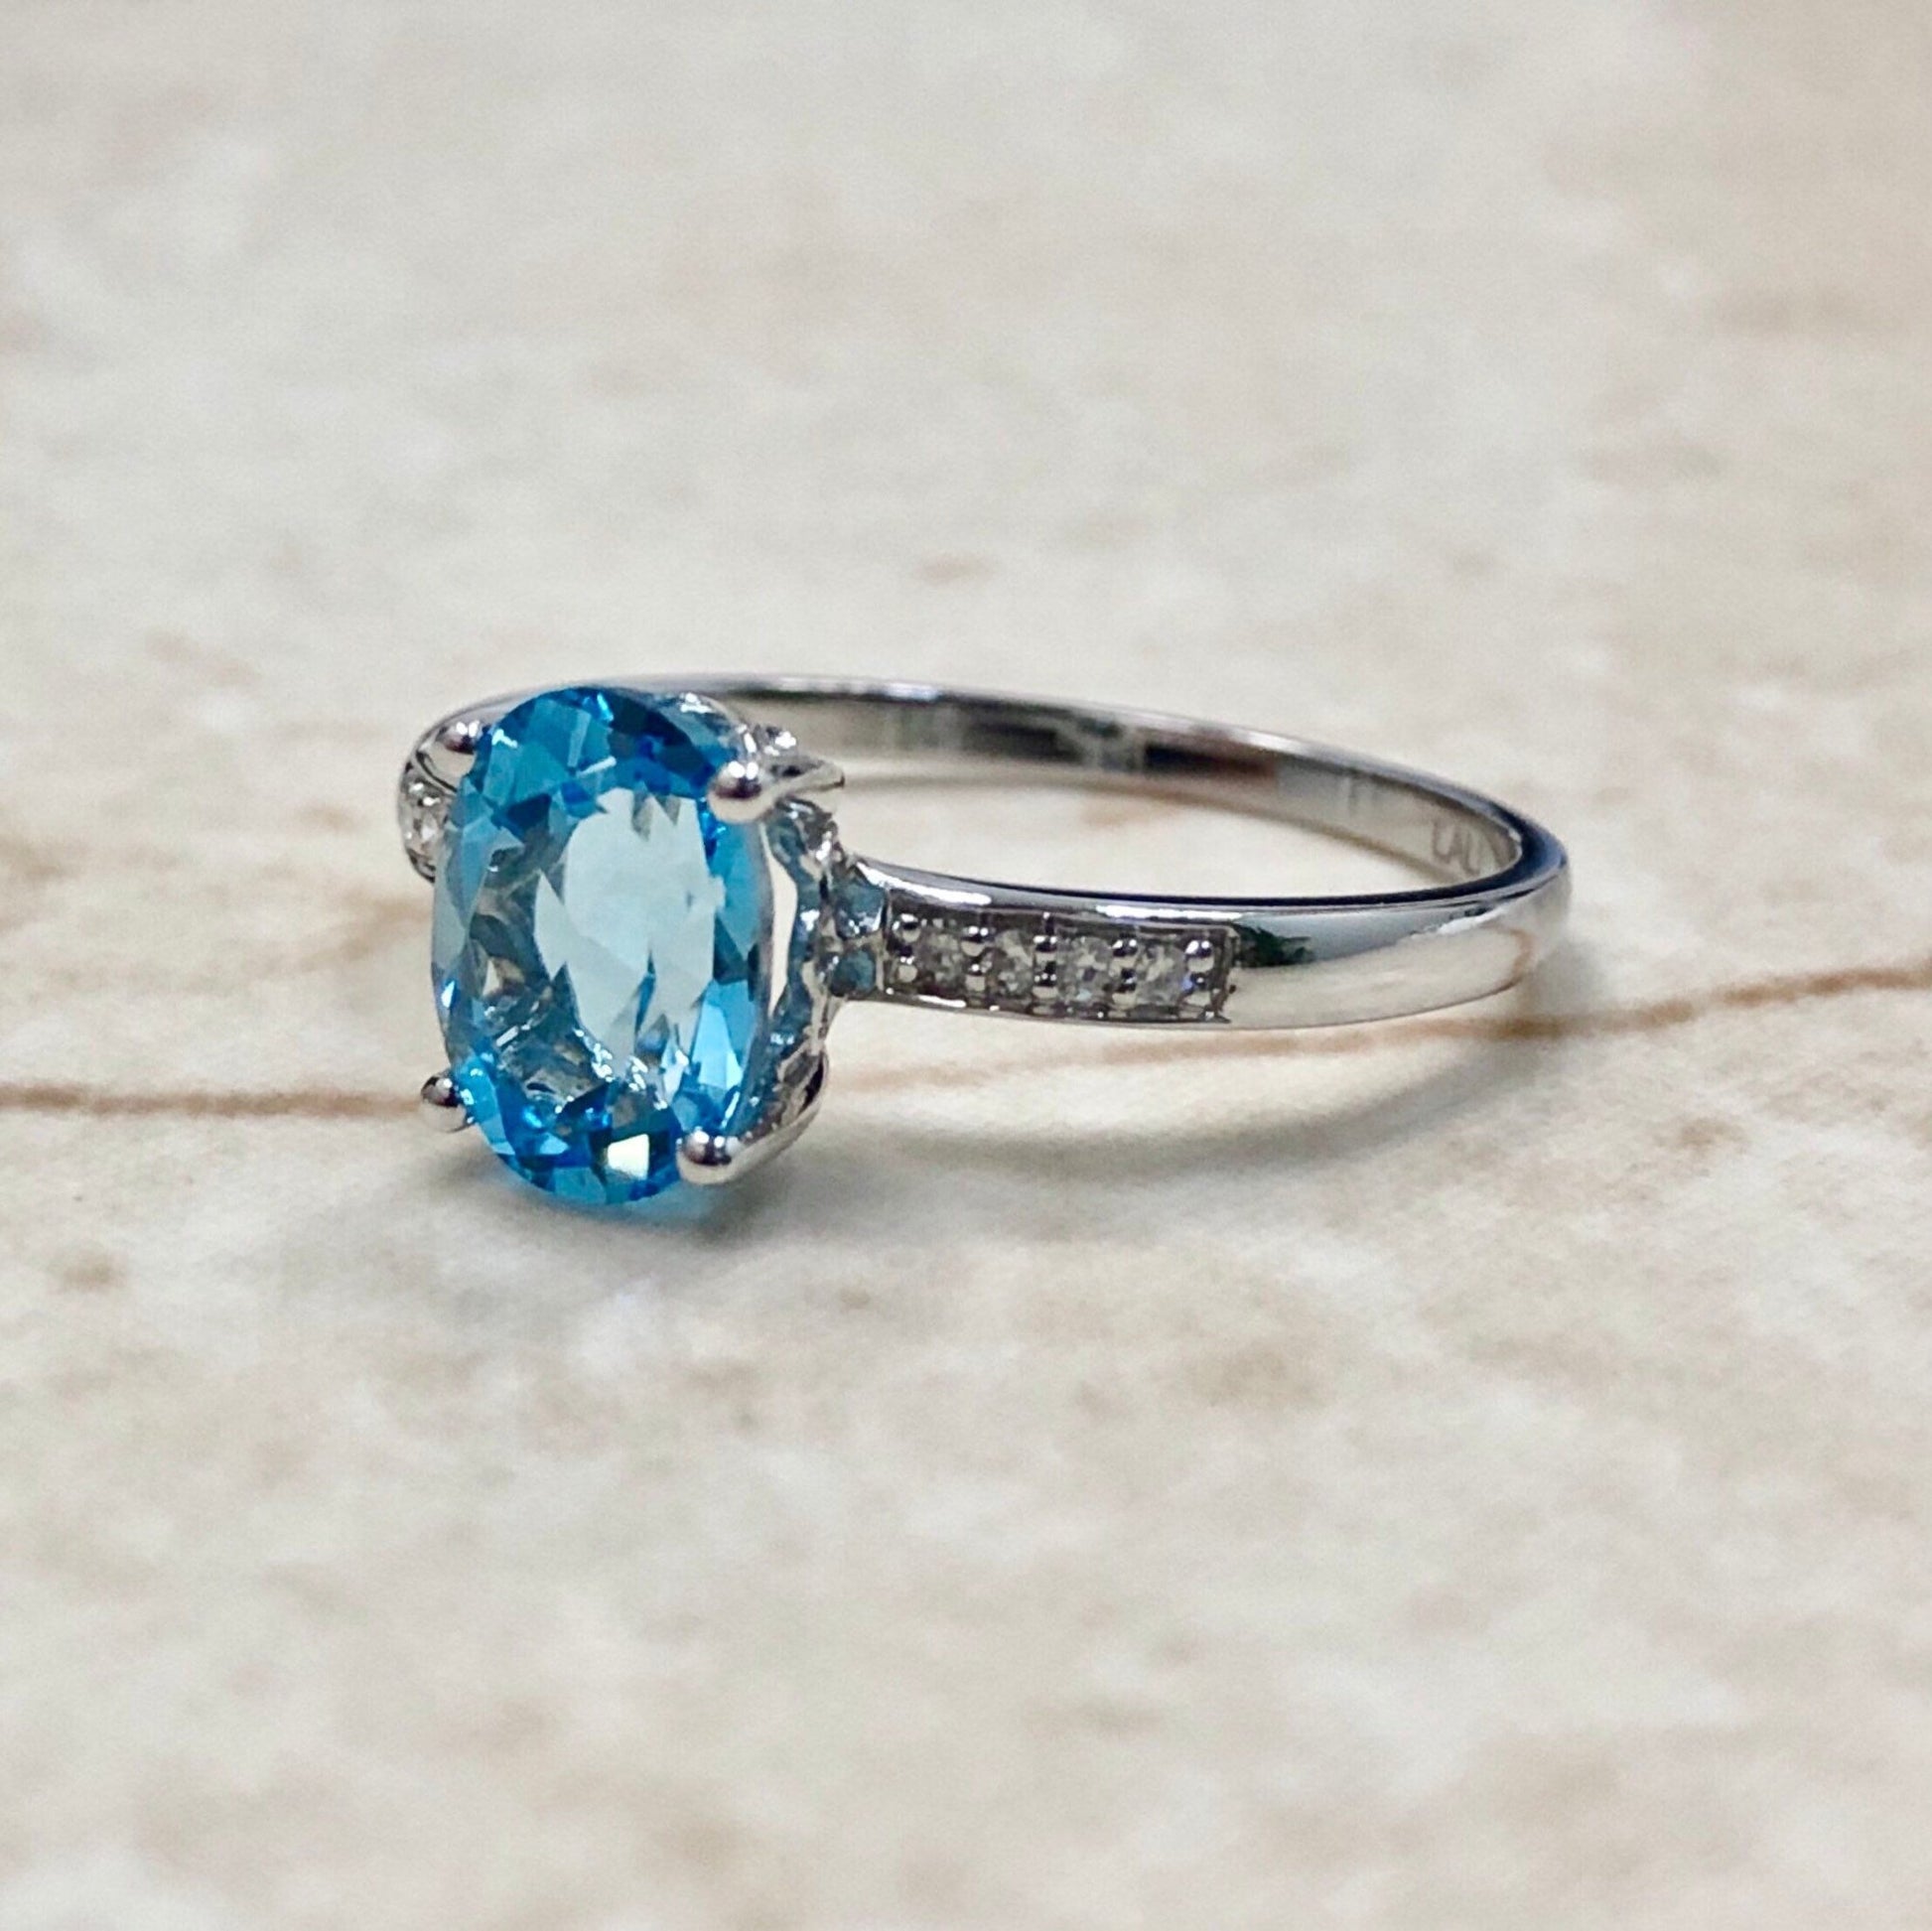 14K Oval Blue Topaz & Diamond Ring - White Gold Blue Topaz Solitaire Ring - November/December Birthstone - Birthday Gift - Best Gift For Her